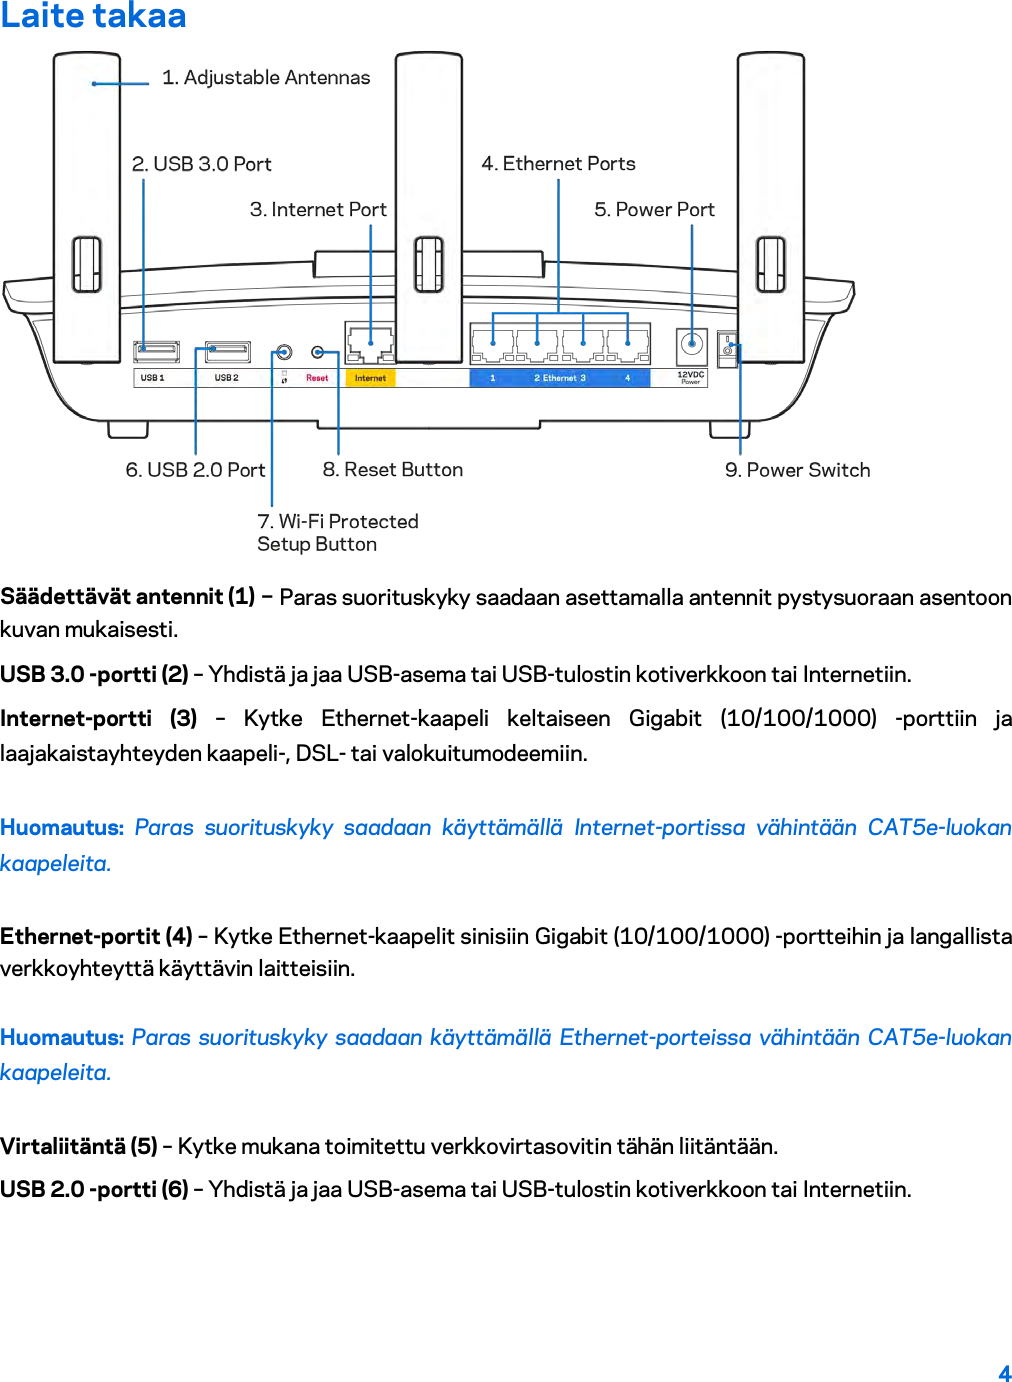 4  Laite takaa  Säädettävät antennit (1) – Paras suorituskyky saadaan asettamalla antennit pystysuoraan asentoon kuvan mukaisesti. USB 3.0 -portti (2) – Yhdistä ja jaa USB-asema tai USB-tulostin kotiverkkoon tai Internetiin. Internet-portti (3) – Kytke Ethernet-kaapeli keltaiseen Gigabit (10/100/1000) -porttiin ja laajakaistayhteyden kaapeli-, DSL- tai valokuitumodeemiin. Huomautus: Paras suorituskyky saadaan käyttämällä Internet-portissa vähintään CAT5e-luokan kaapeleita. Ethernet-portit (4) – Kytke Ethernet-kaapelit sinisiin Gigabit (10/100/1000) -portteihin ja langallista verkkoyhteyttä käyttävin laitteisiin. Huomautus: Paras suorituskyky saadaan käyttämällä Ethernet-porteissa vähintään CAT5e-luokan kaapeleita. Virtaliitäntä (5) – Kytke mukana toimitettu verkkovirtasovitin tähän liitäntään. USB 2.0 -portti (6) – Yhdistä ja jaa USB-asema tai USB-tulostin kotiverkkoon tai Internetiin. 